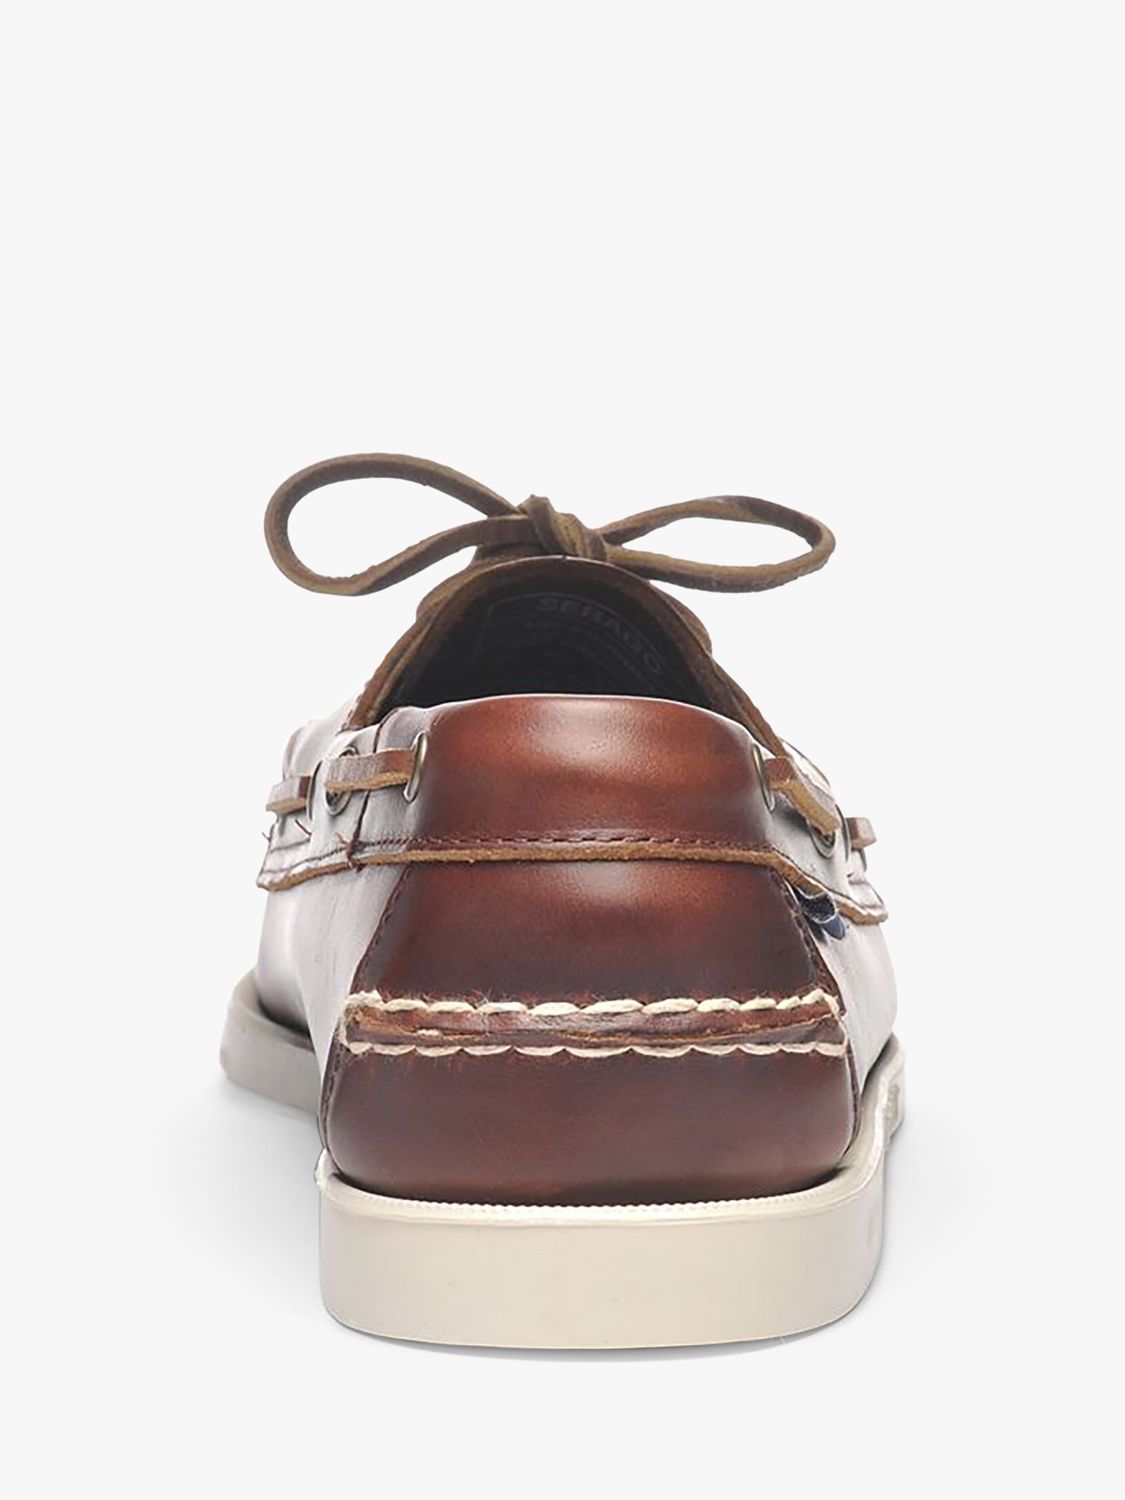 Sebago Docksides FGL Leather Boat Shoes, Brown, 7